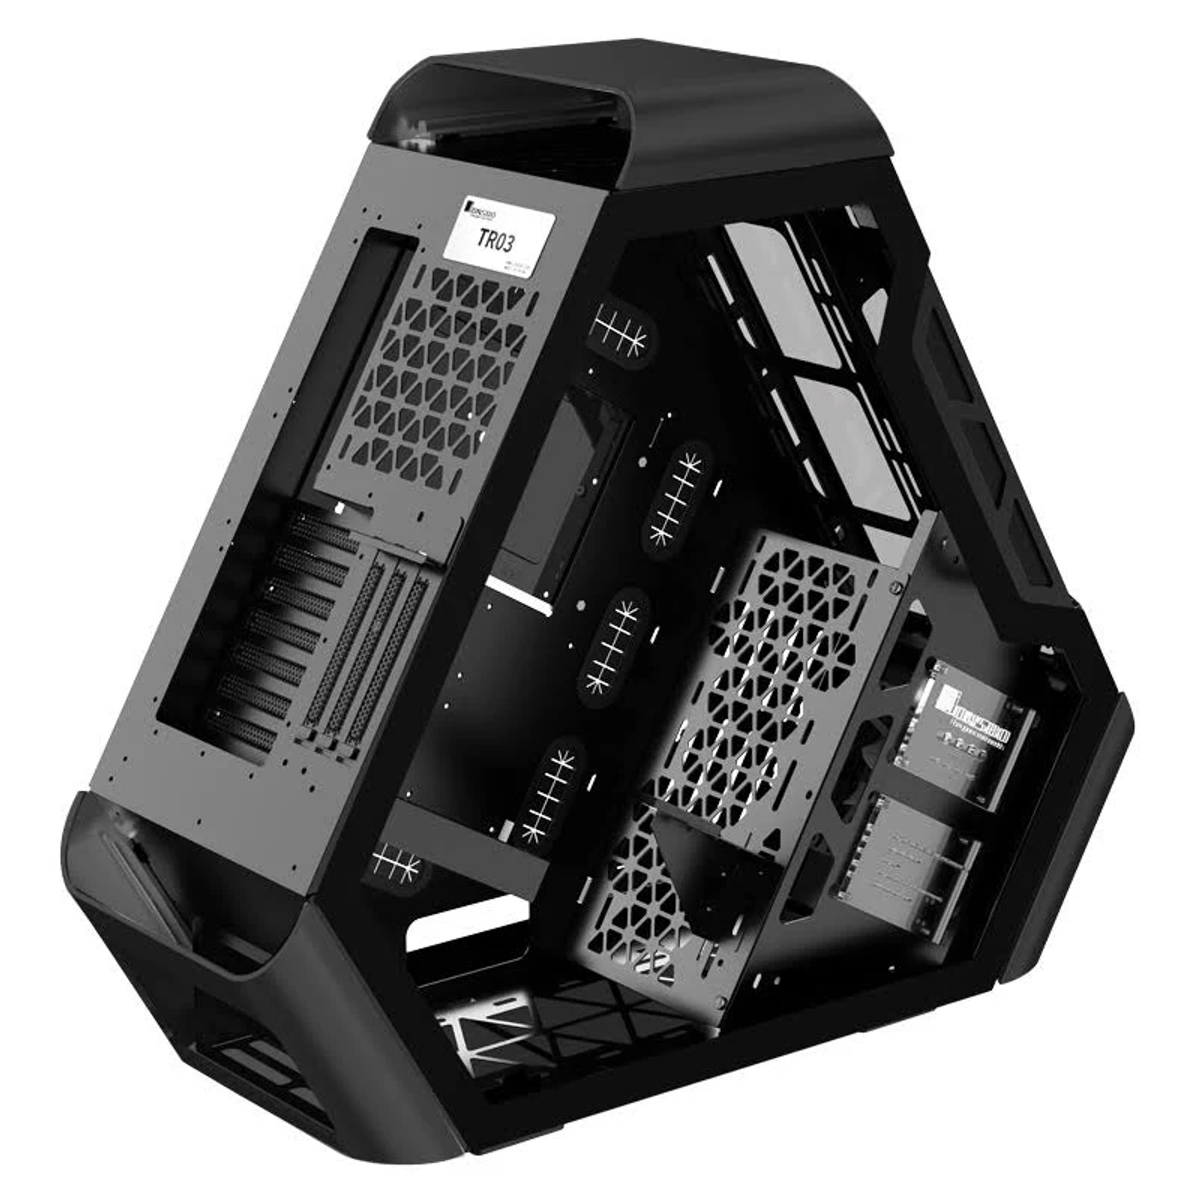 Schwarz TR03-G BLACK PC JONSBO Gehäuse,